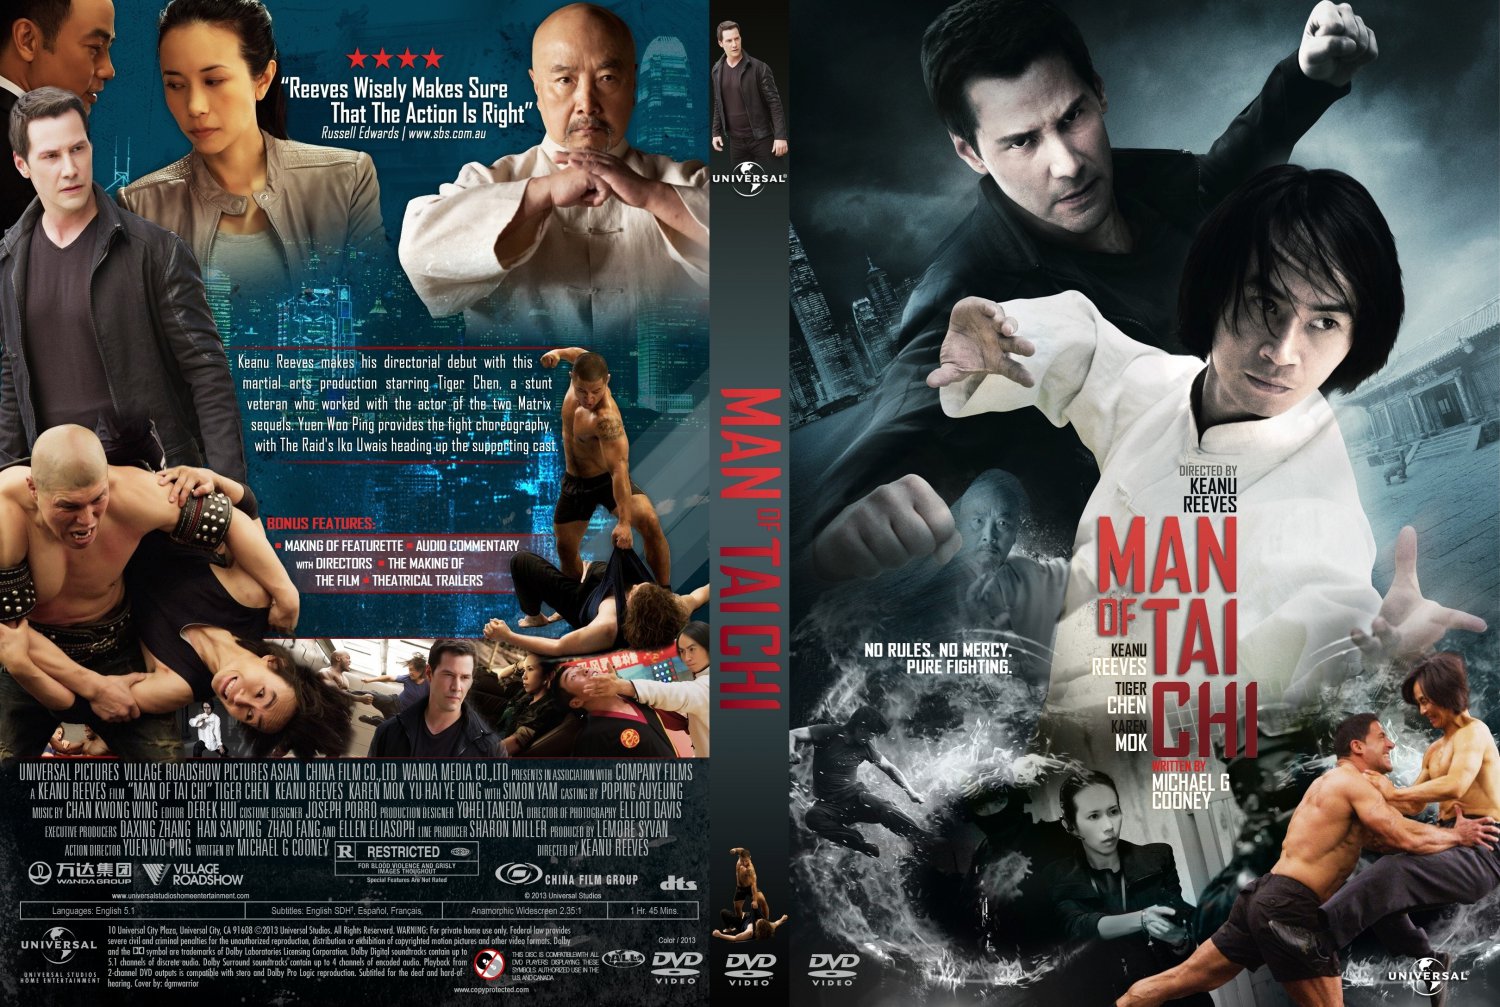 pelcula de Accin ,artes marciales - Man Of Tai Chi